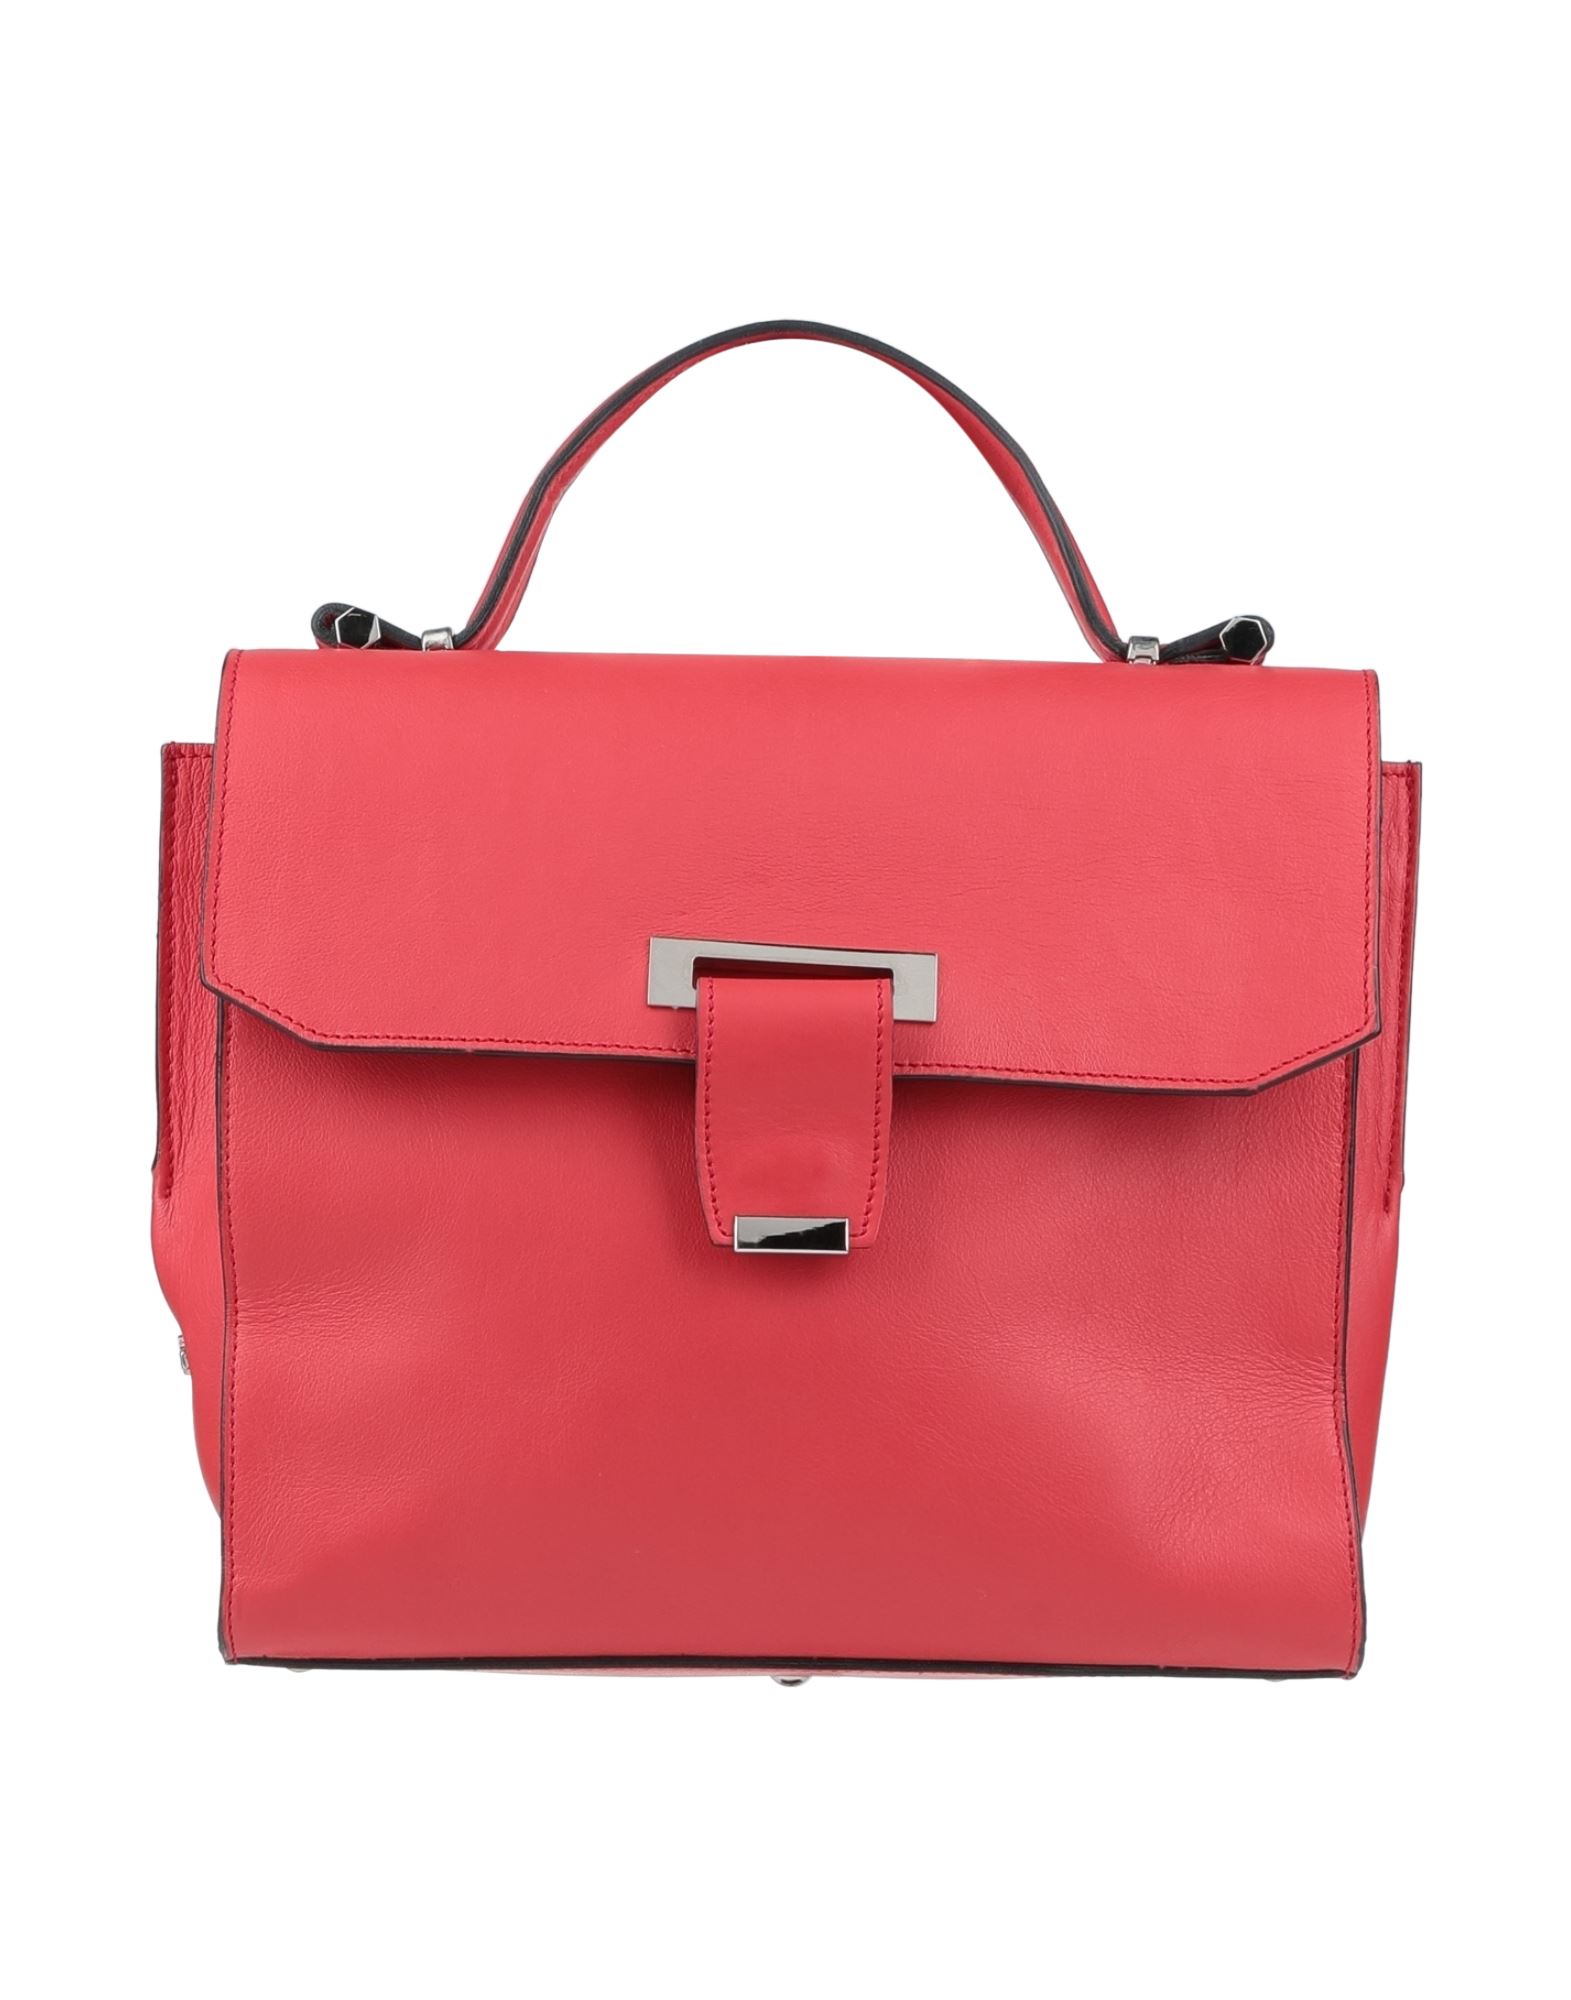 Ghibli Handbags In Red